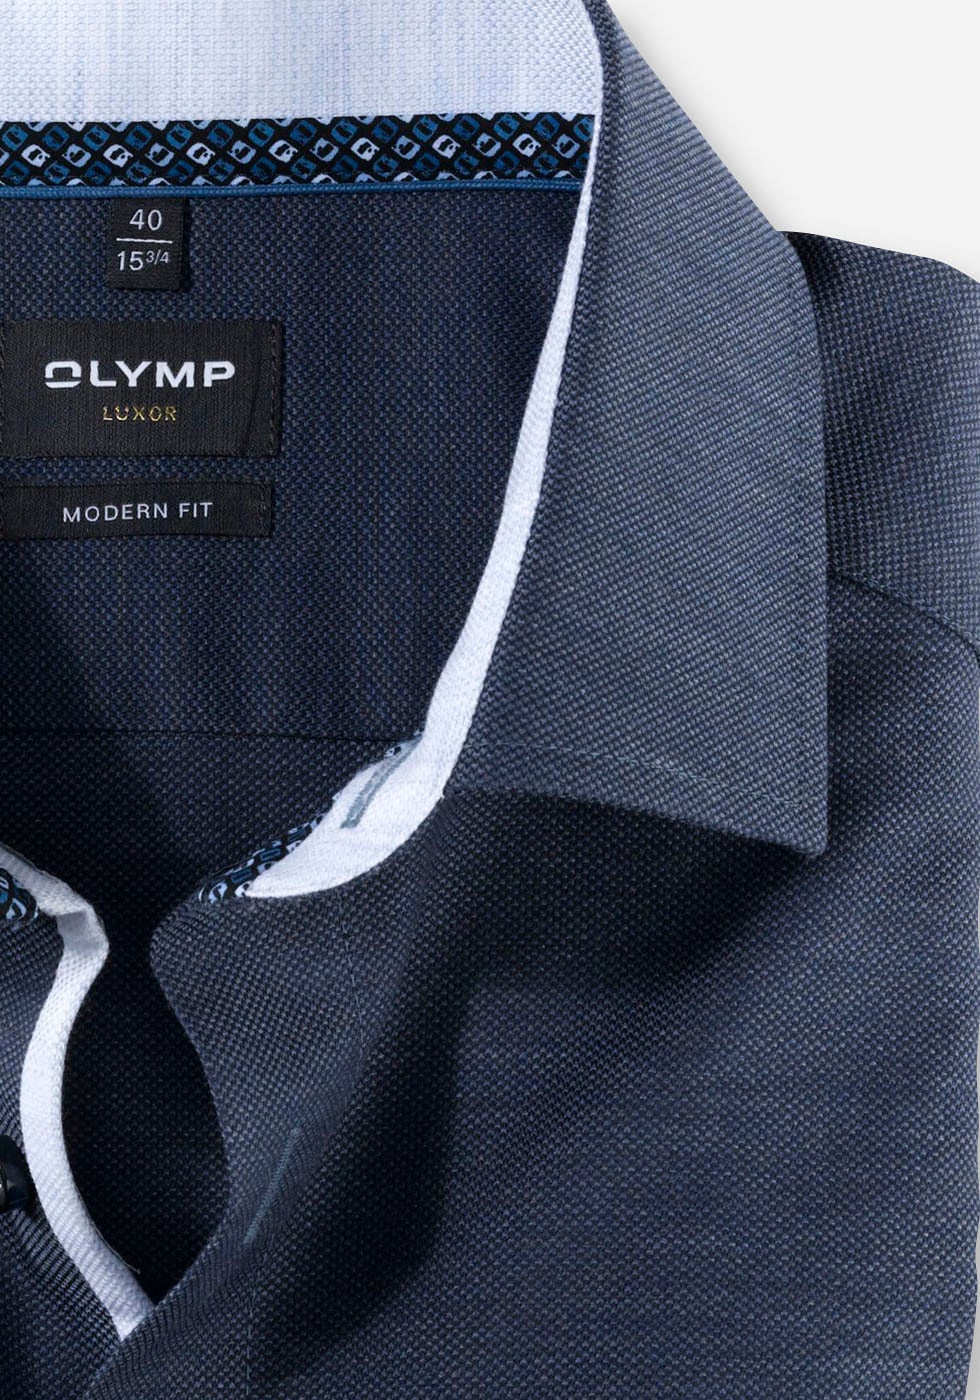 »Luxor tonigem fit«, shoppen bei OLYMP modern Businesshemd OTTO online Logo-Stitching mit